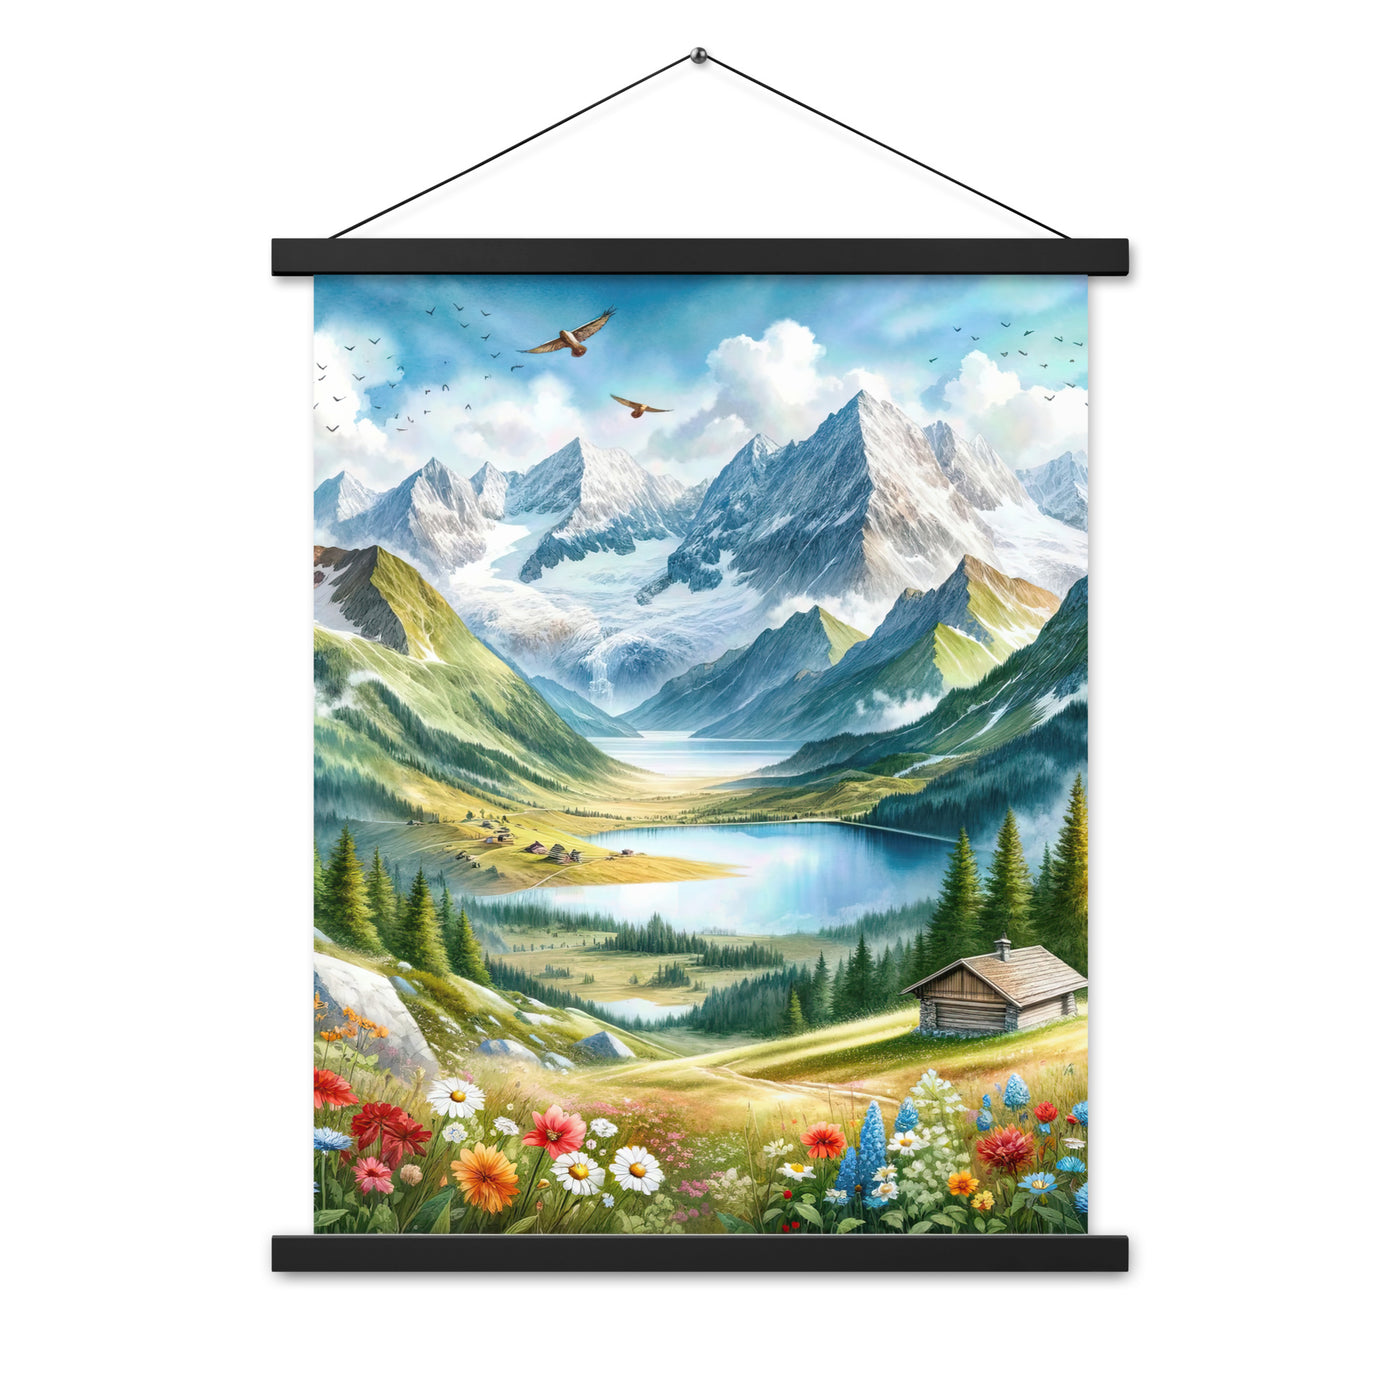 Quadratisches Aquarell der Alpen, Berge mit schneebedeckten Spitzen - Premium Poster mit Aufhängung berge xxx yyy zzz 45.7 x 61 cm